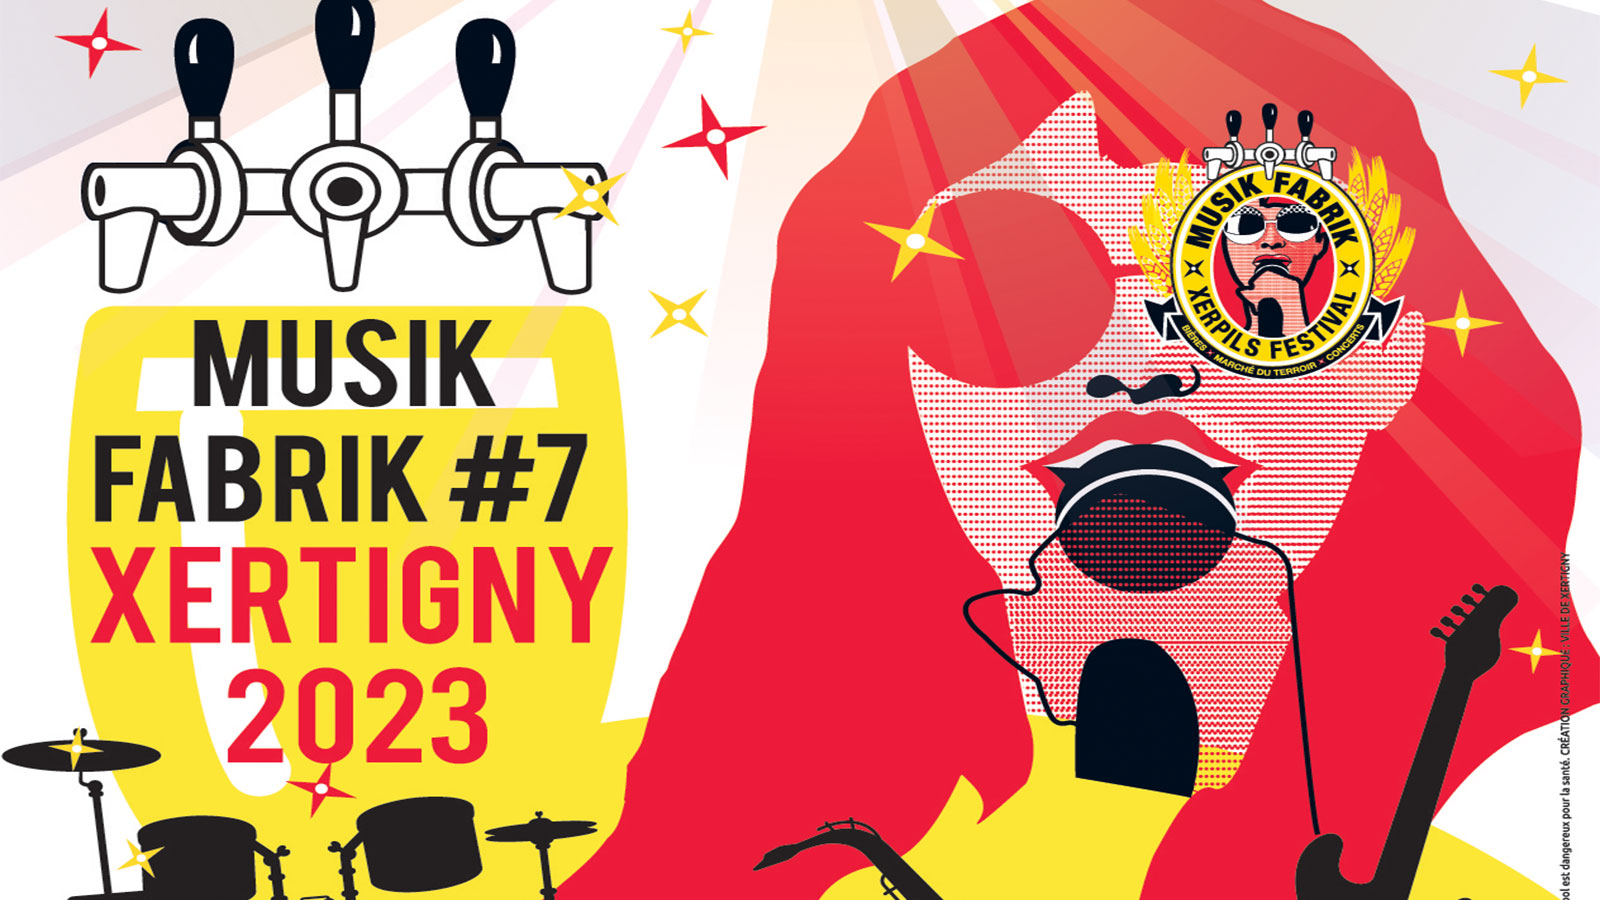 Le Musik Fabrik festival vous donne rendez-vous pour sa 7e édition